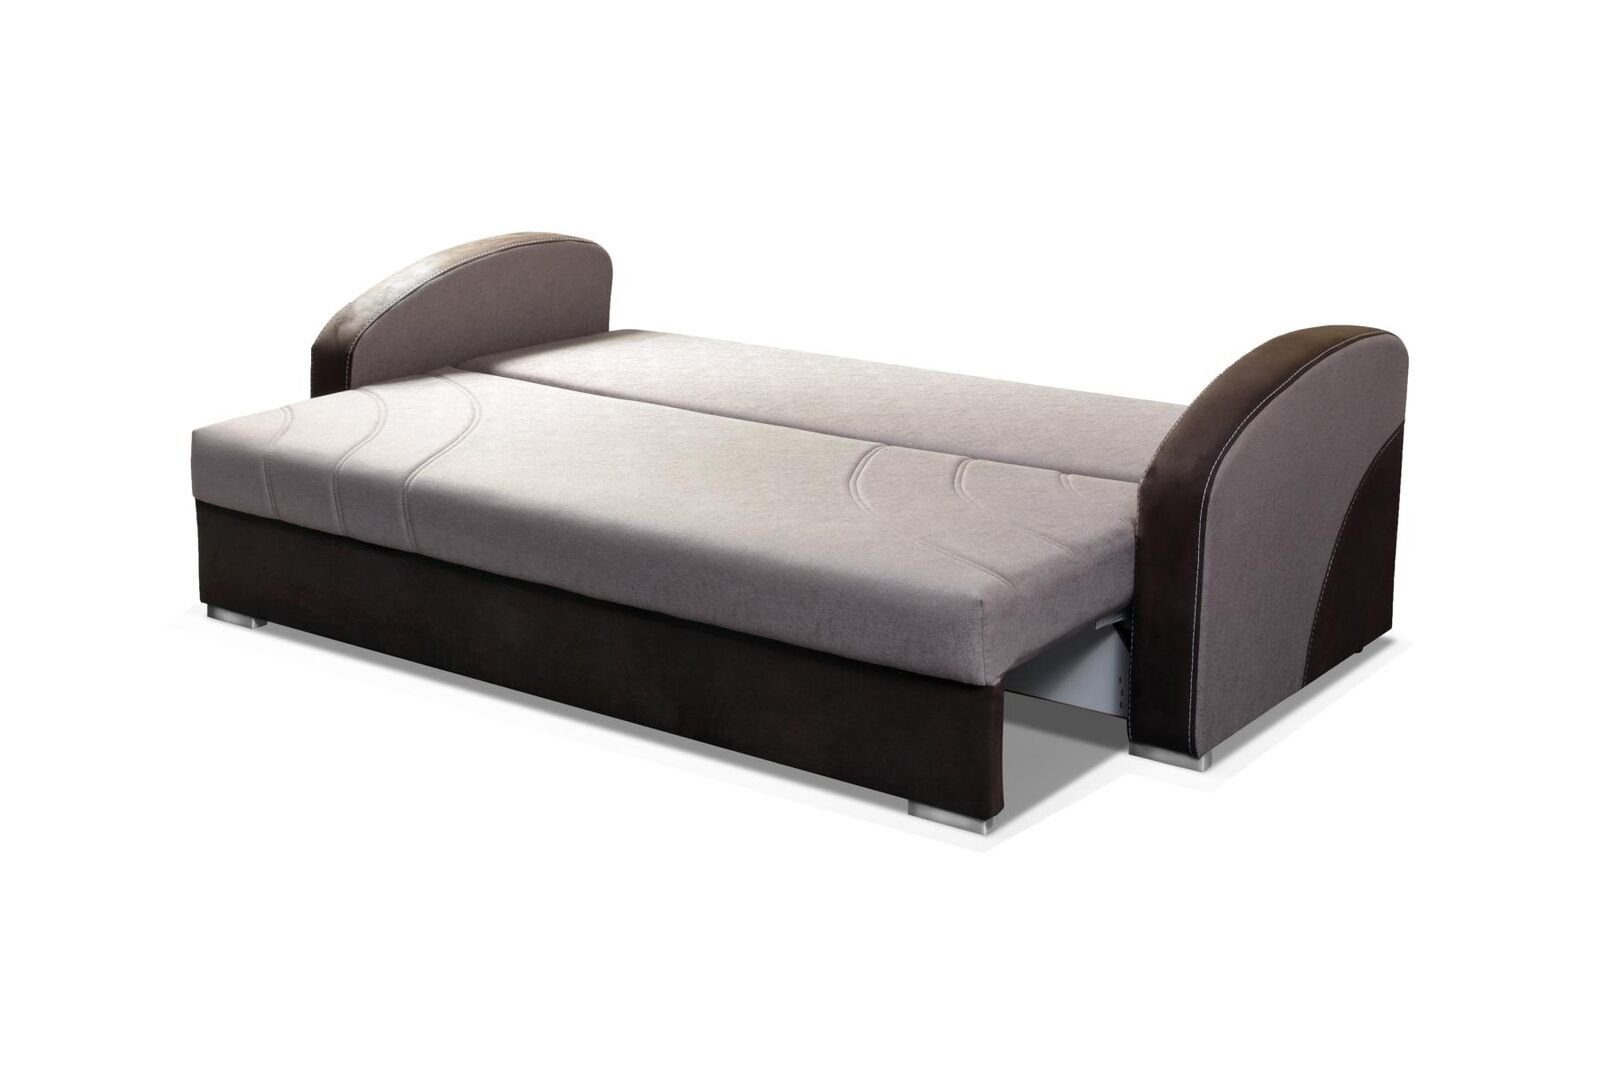 Bettfunktion luxus JVmoebel Europe mit Grauer Neu, in Moderner Made Sofa Dreisitzer